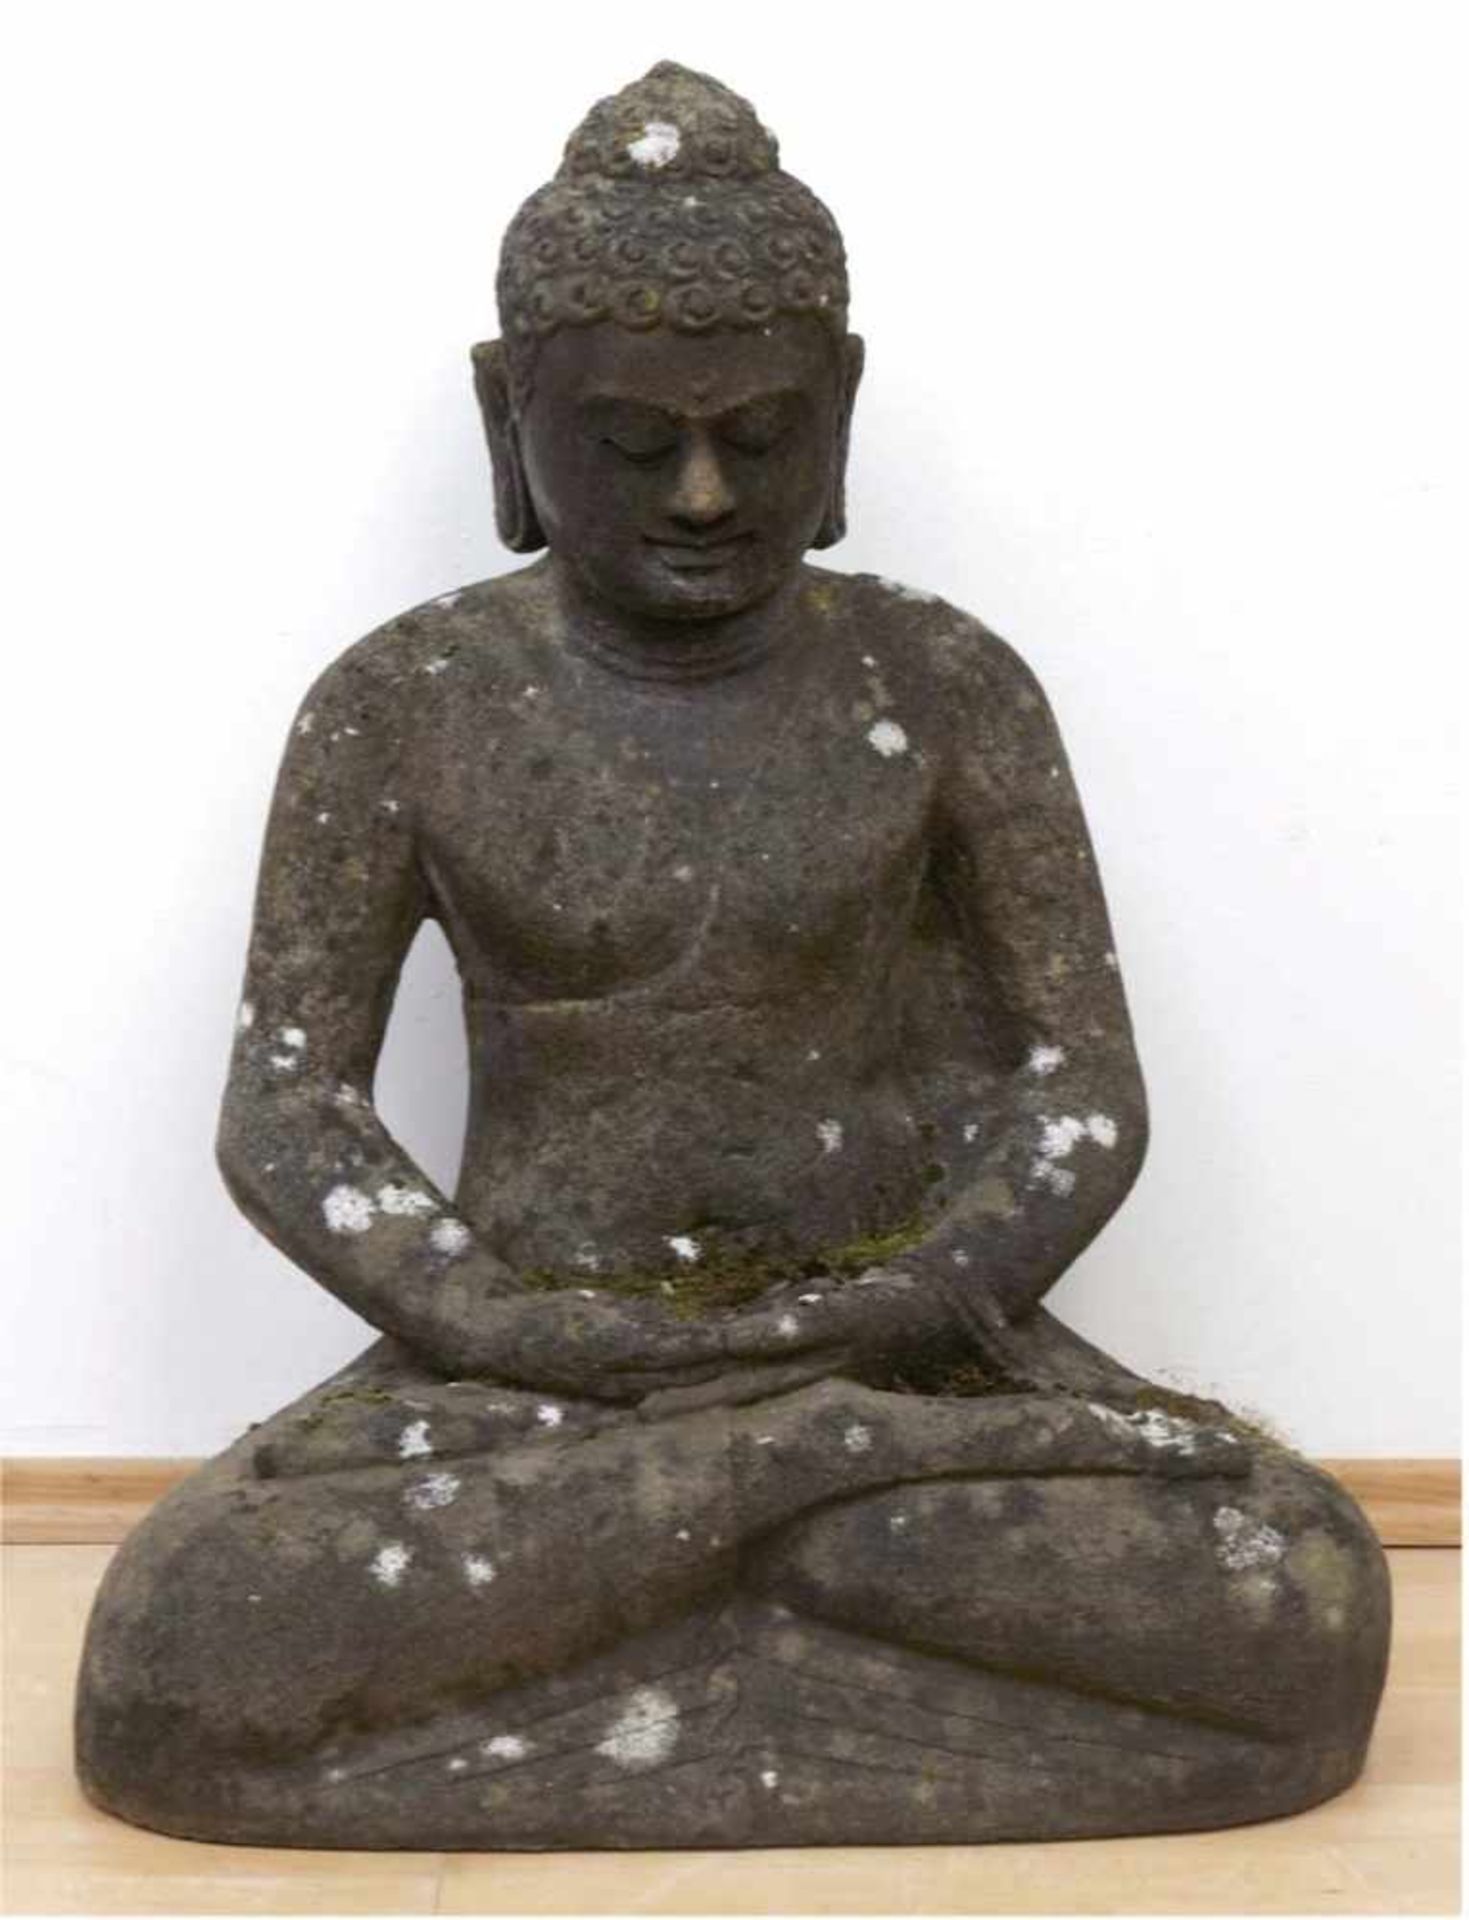 Gartenskulptur "Buddha", Basalt-Steinguß, sitzend, Witterungsspuren, H. 78 cm